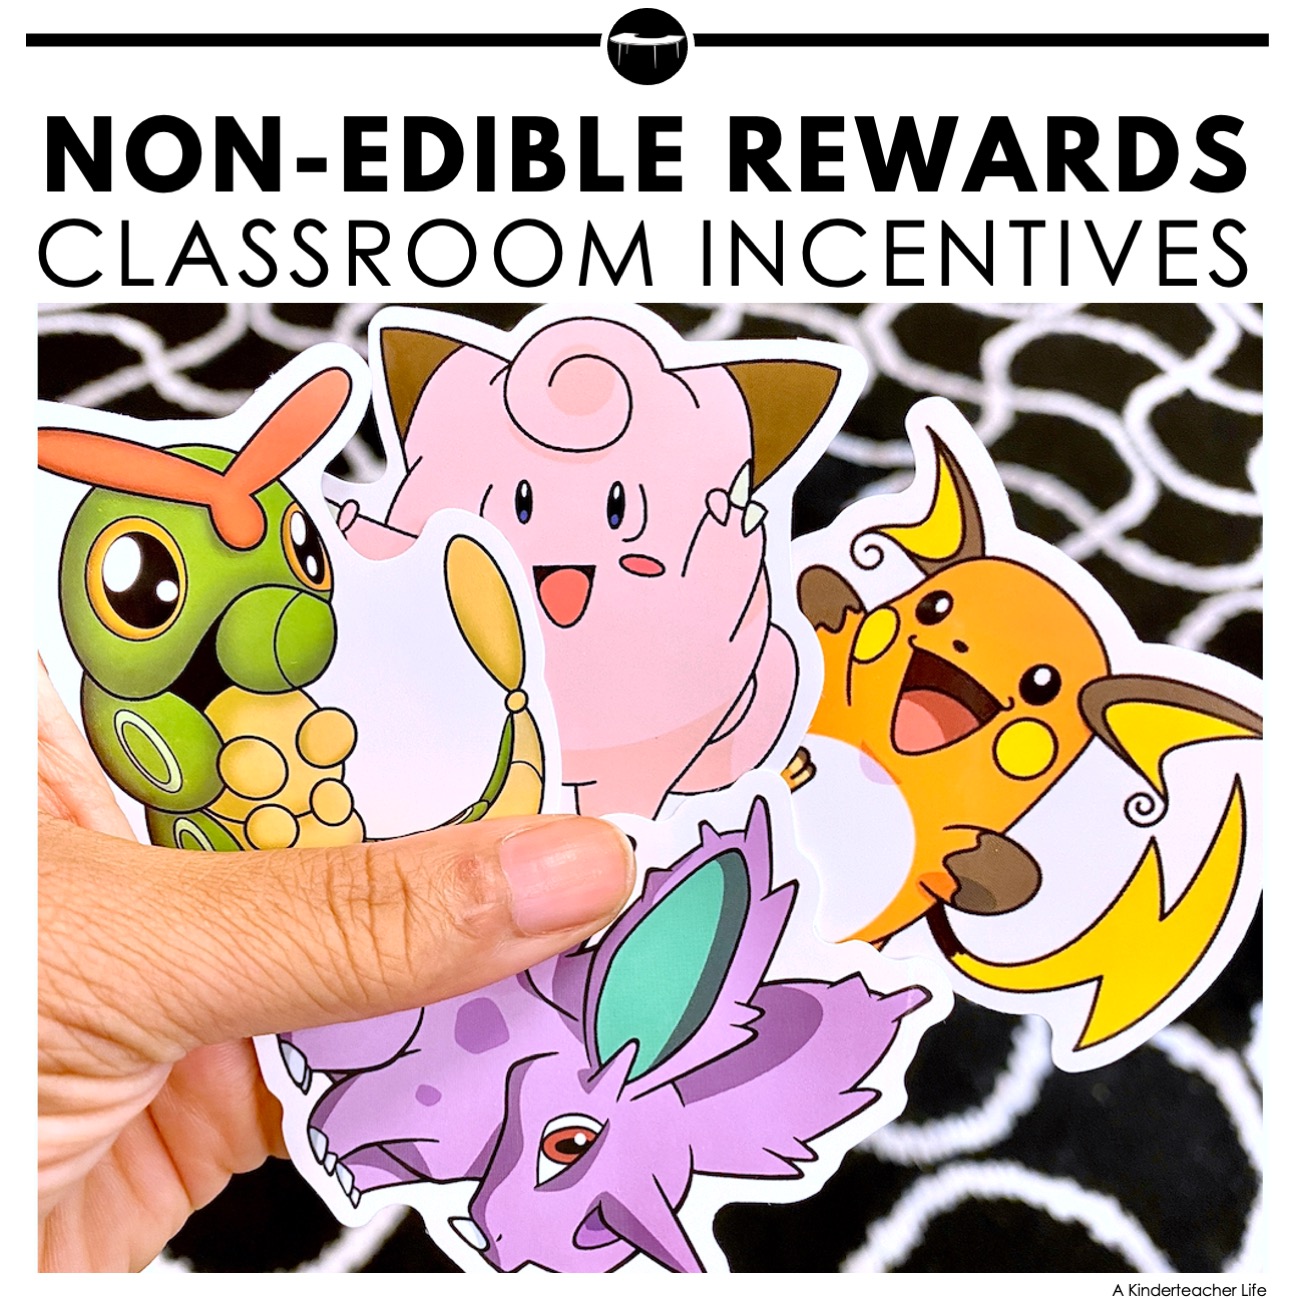 Three Non-edible rewards for the classroom